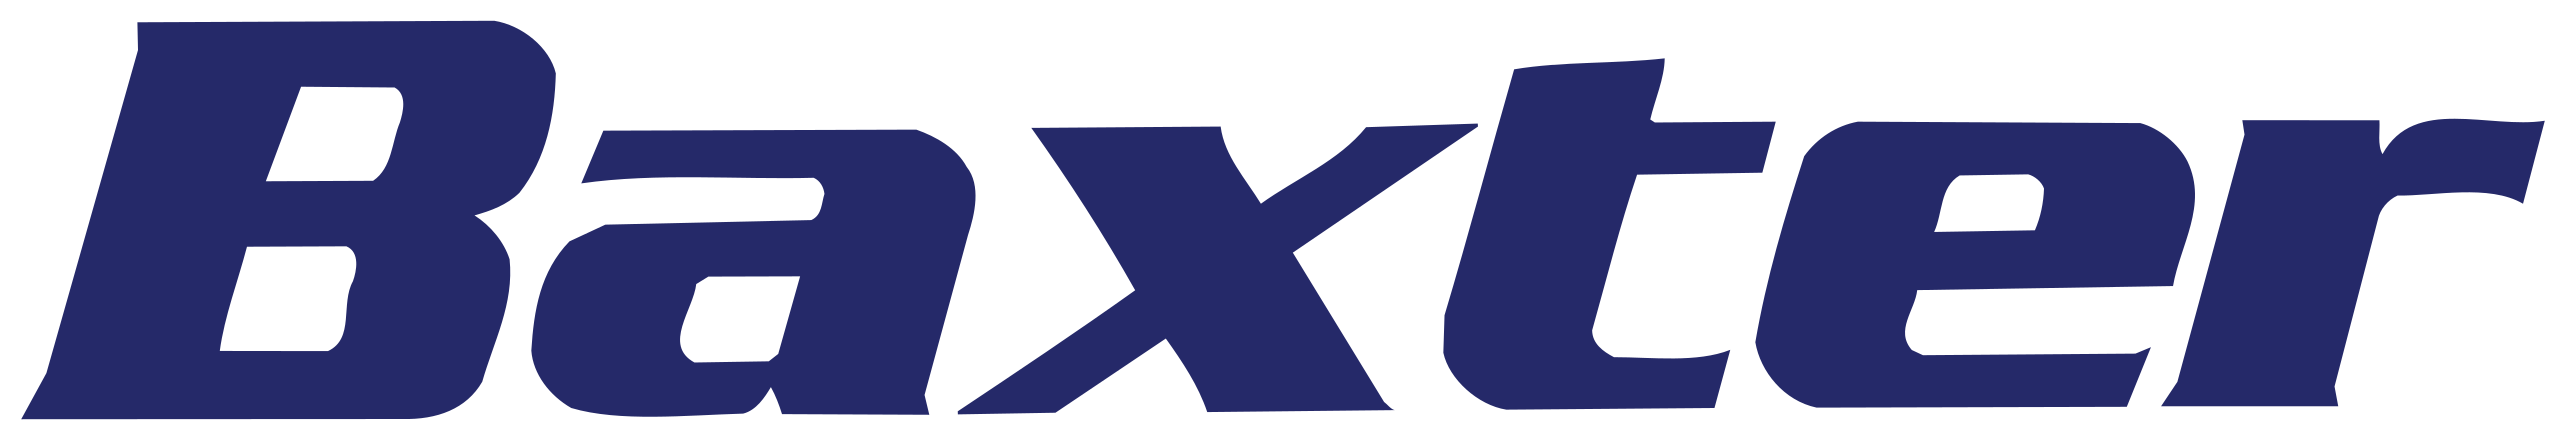 logo du client de la SLIR, Baxter